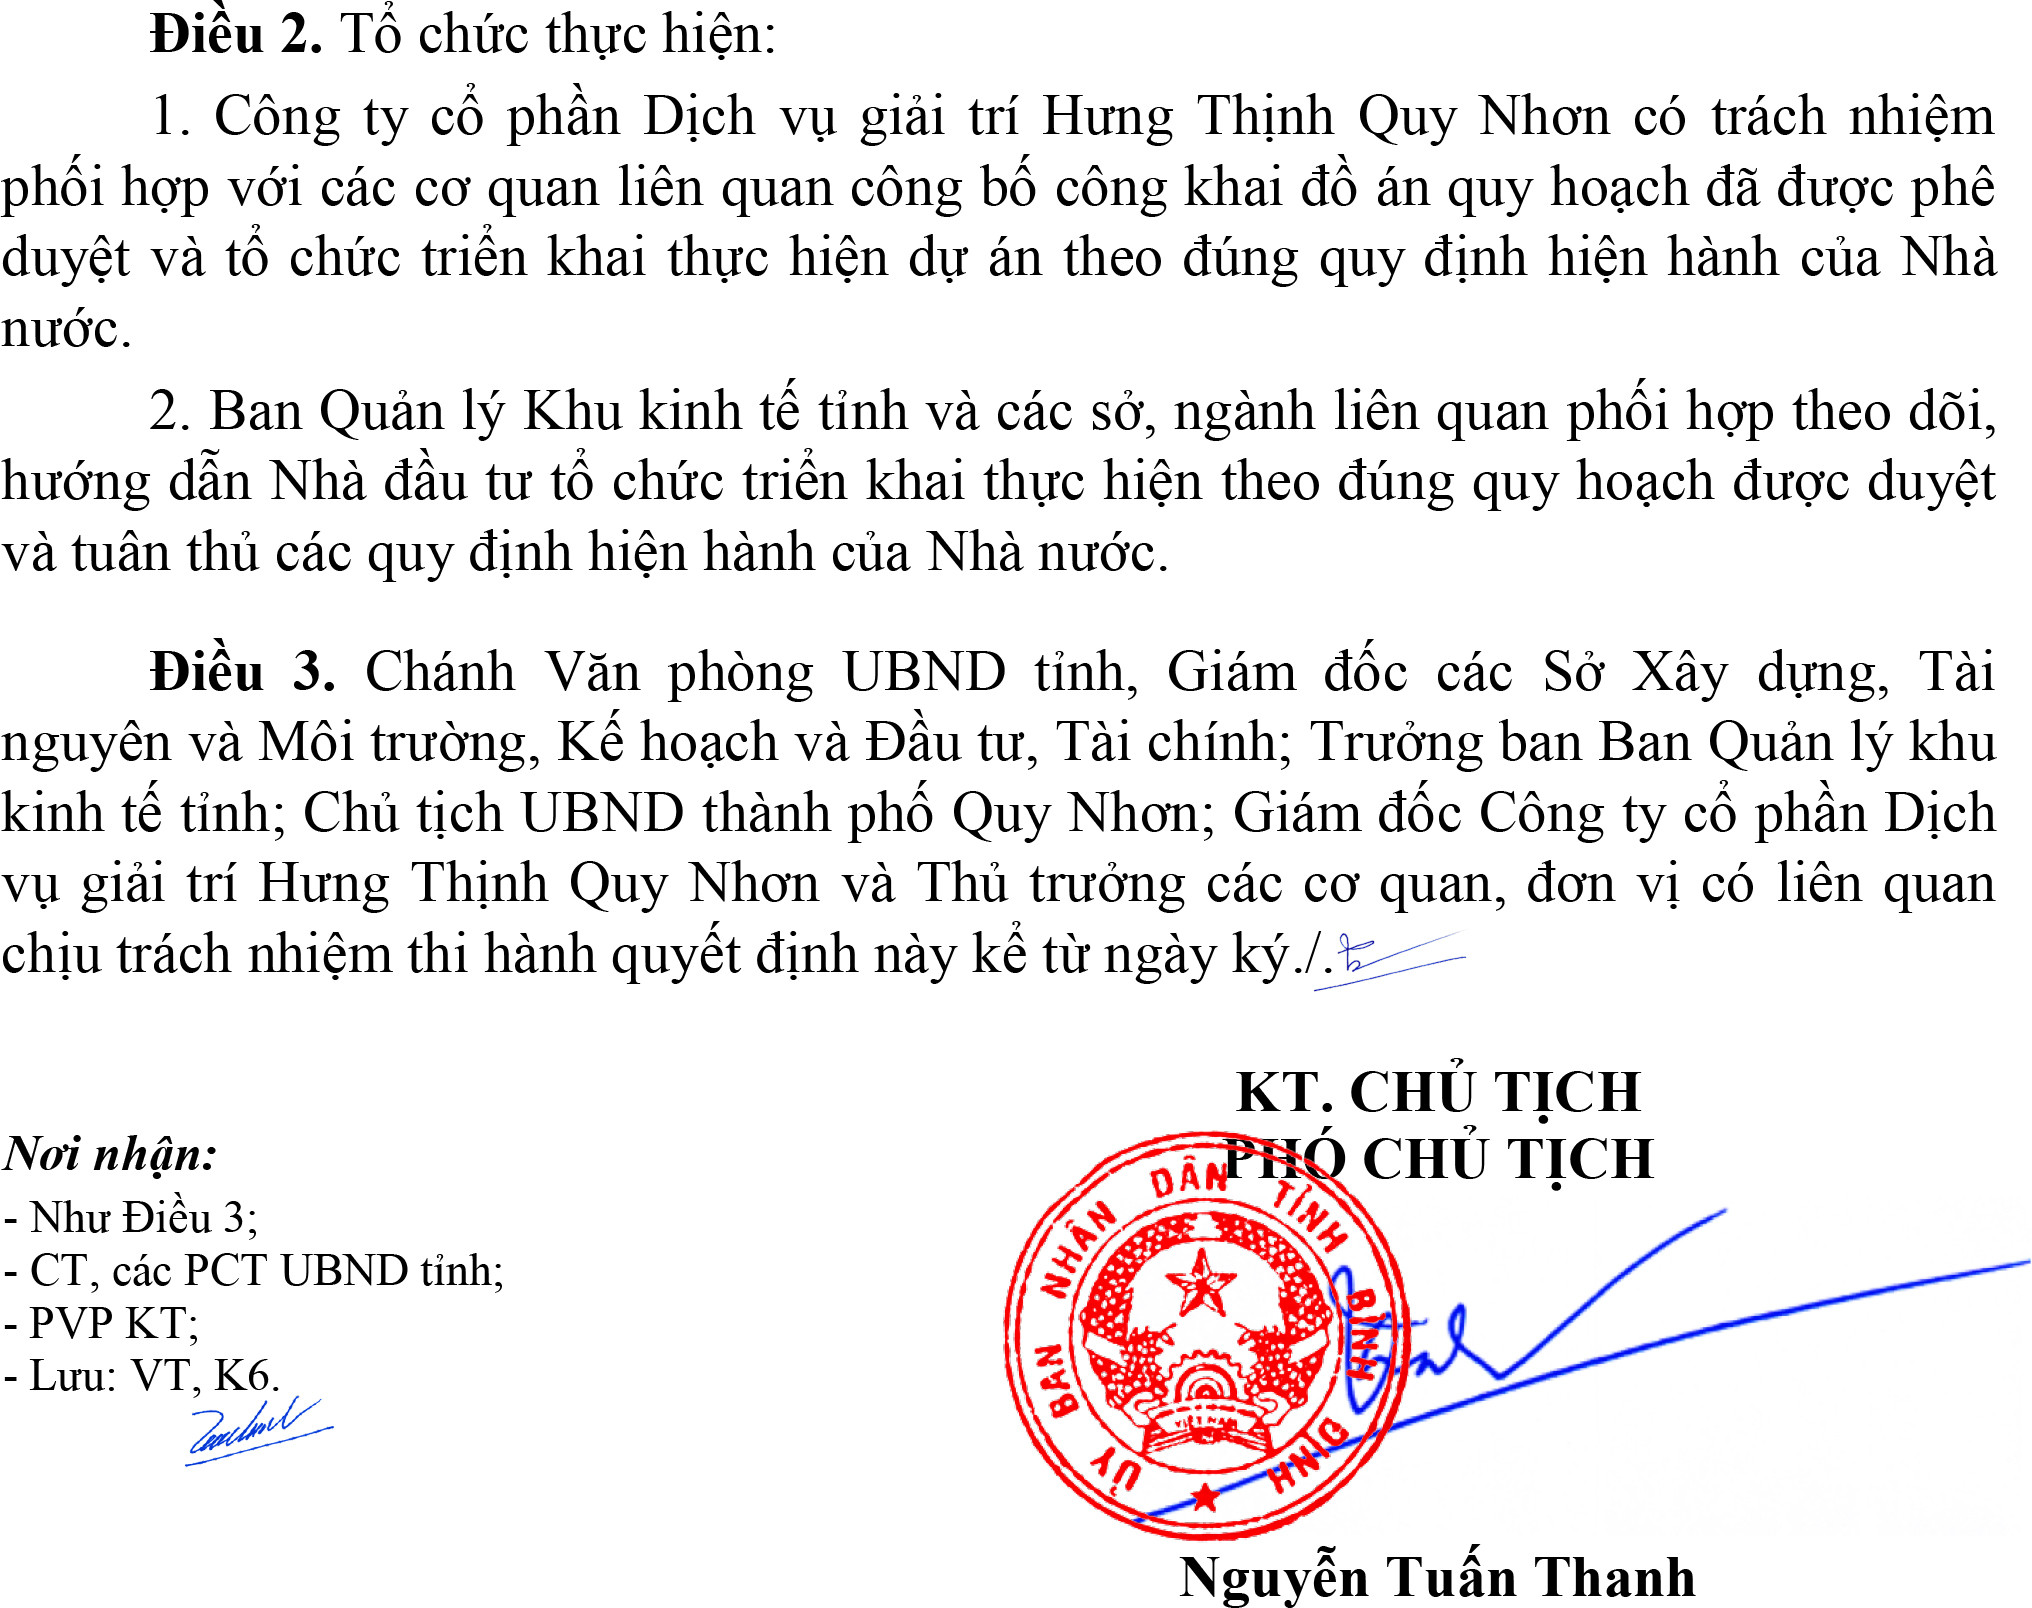 Ông Nguyễn Tuấn Thanh, Phó Chủ tịch UBND tỉnh Bình Định vừa ký quyết định 729/QĐ-UBND về việc phê duyệt đồ án Điều chỉnh quy hoạch chi tiết xây dựng tỷ lệ 1/500 Khu du lịch Hải Giang  Merry Land.